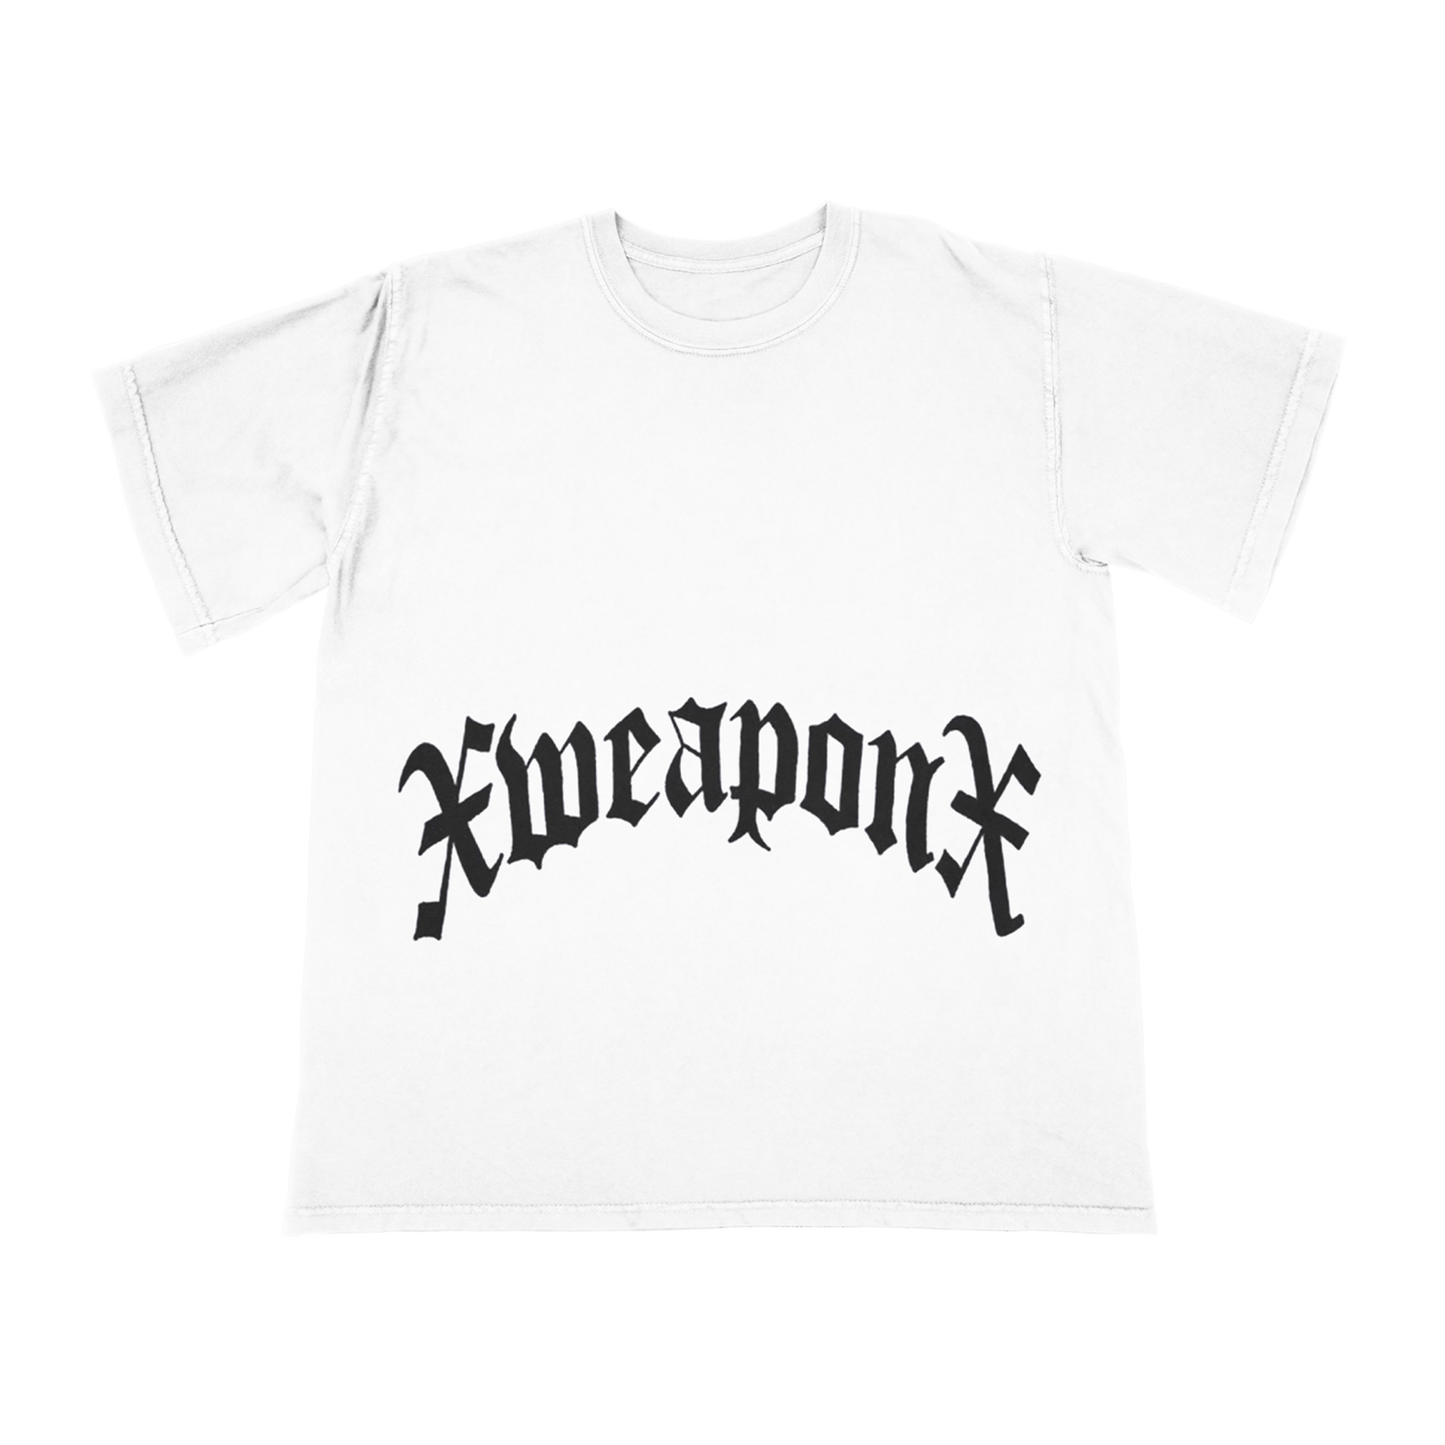 xWeaponx - Straight Edge Domination Shirt